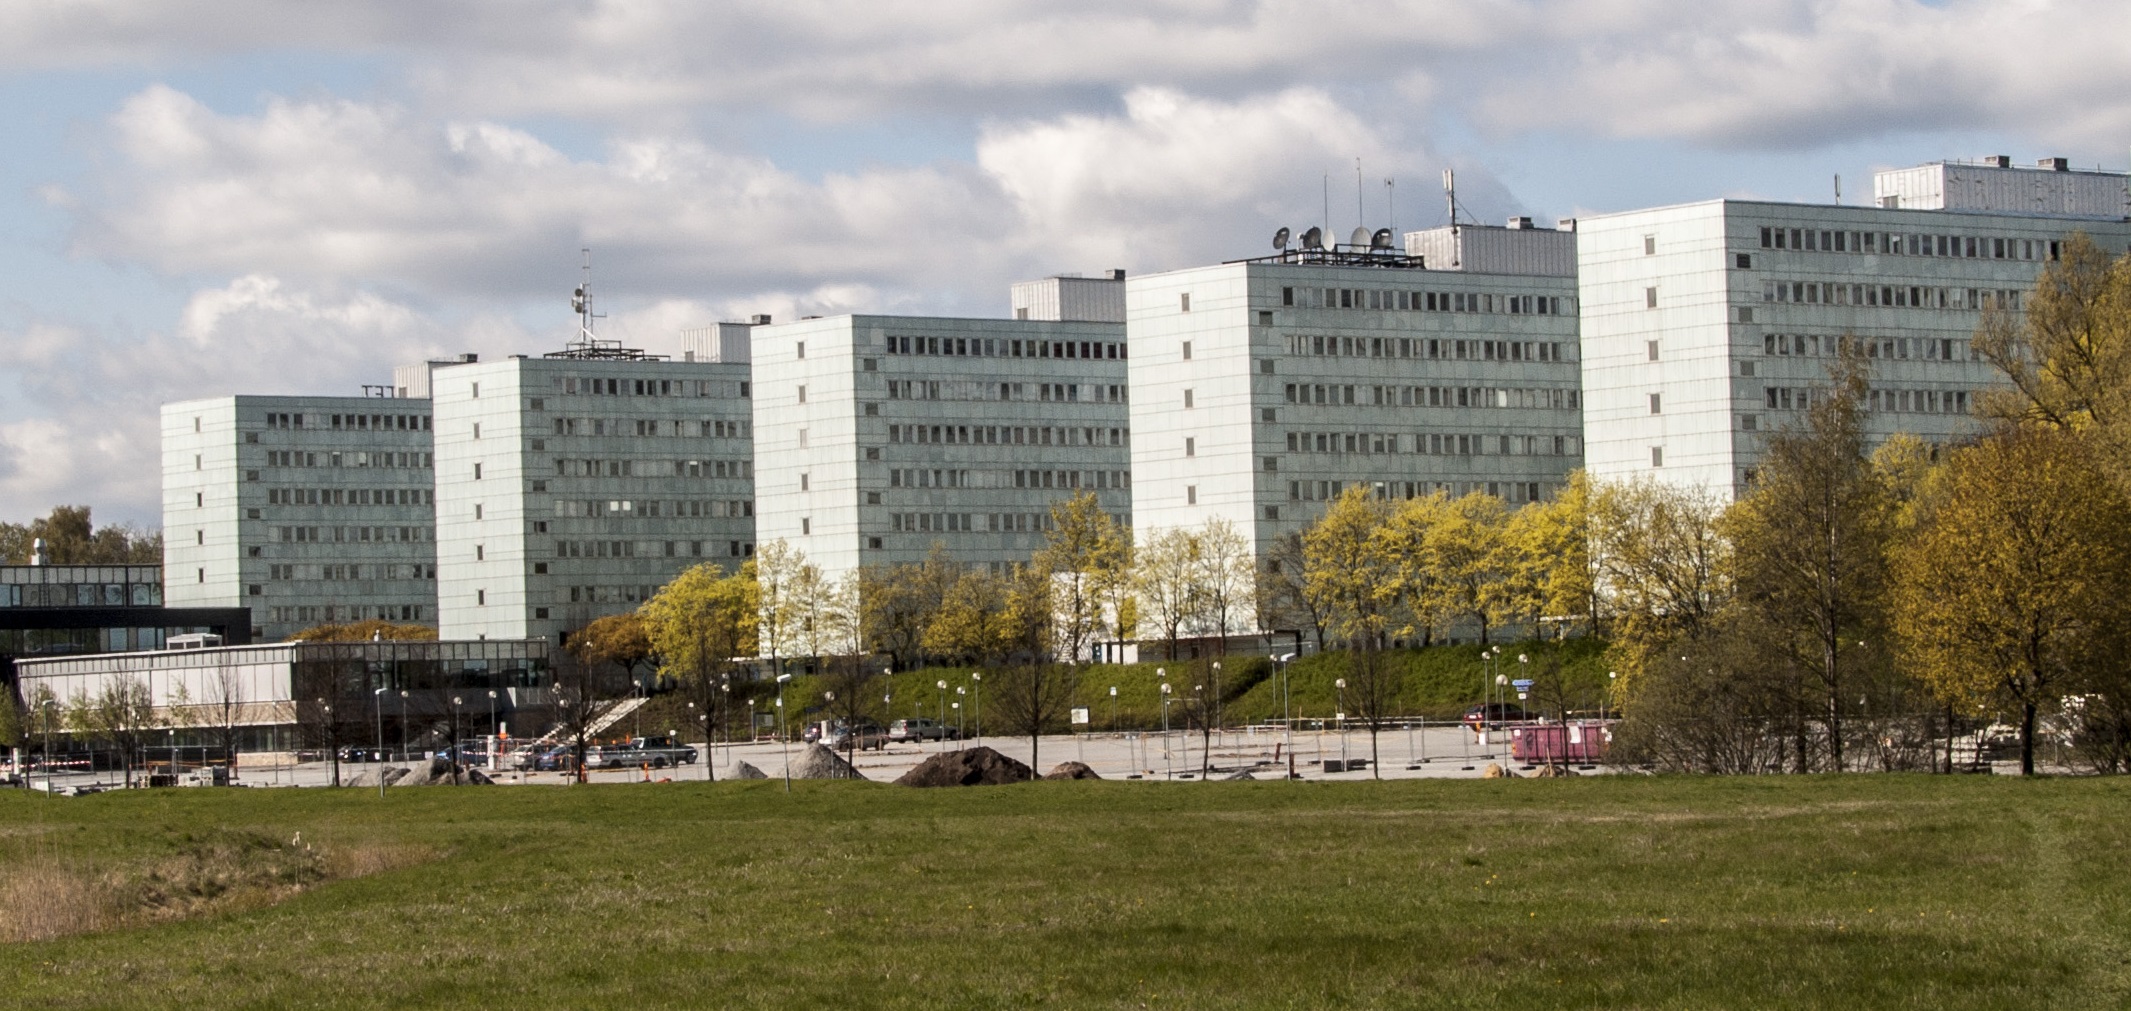 Stockholms Universitet - Södra huset är några av Stockholms fulaste byggnader.